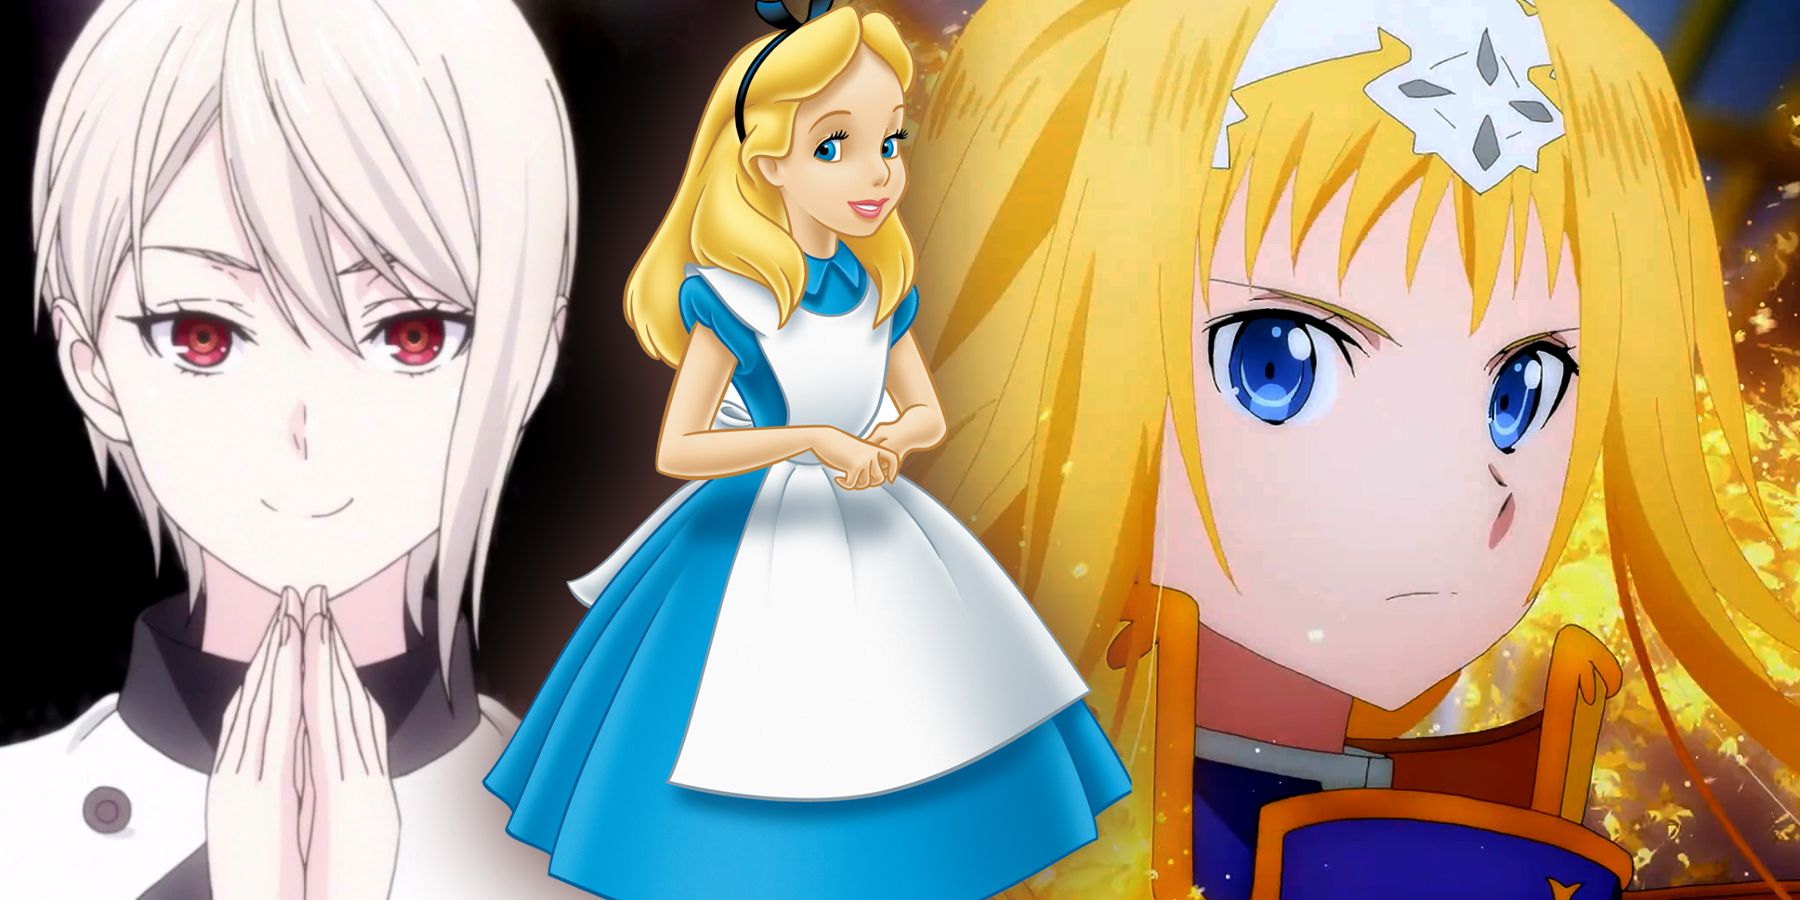 Nissim Aharonov - Alice in wonderland Disney vs Anime